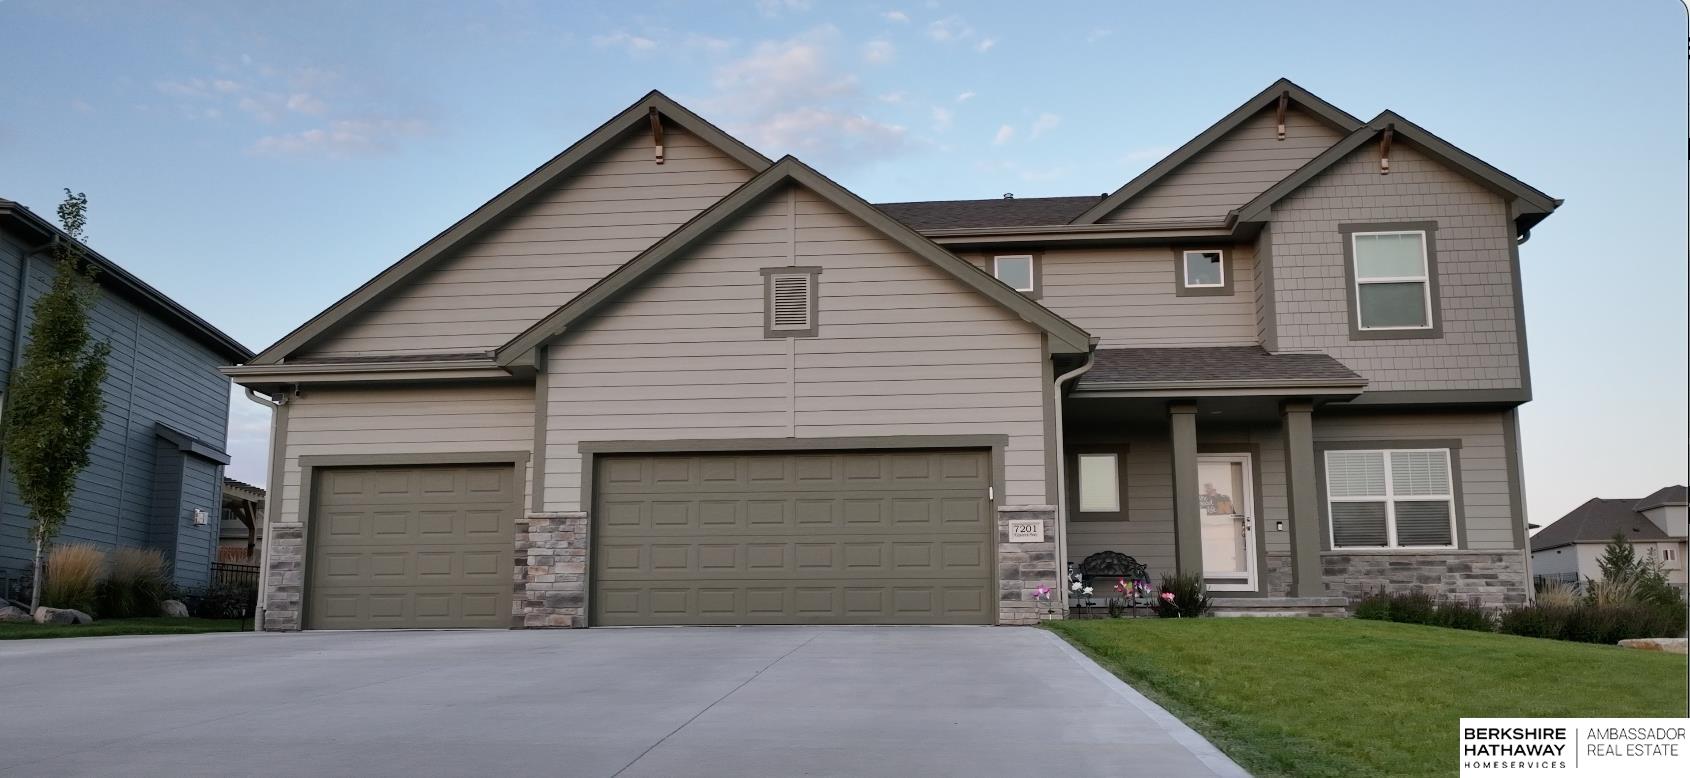 7201 Kilpatrick Parkway Omaha Home Listings - Nancy Heim-berg Real Estate